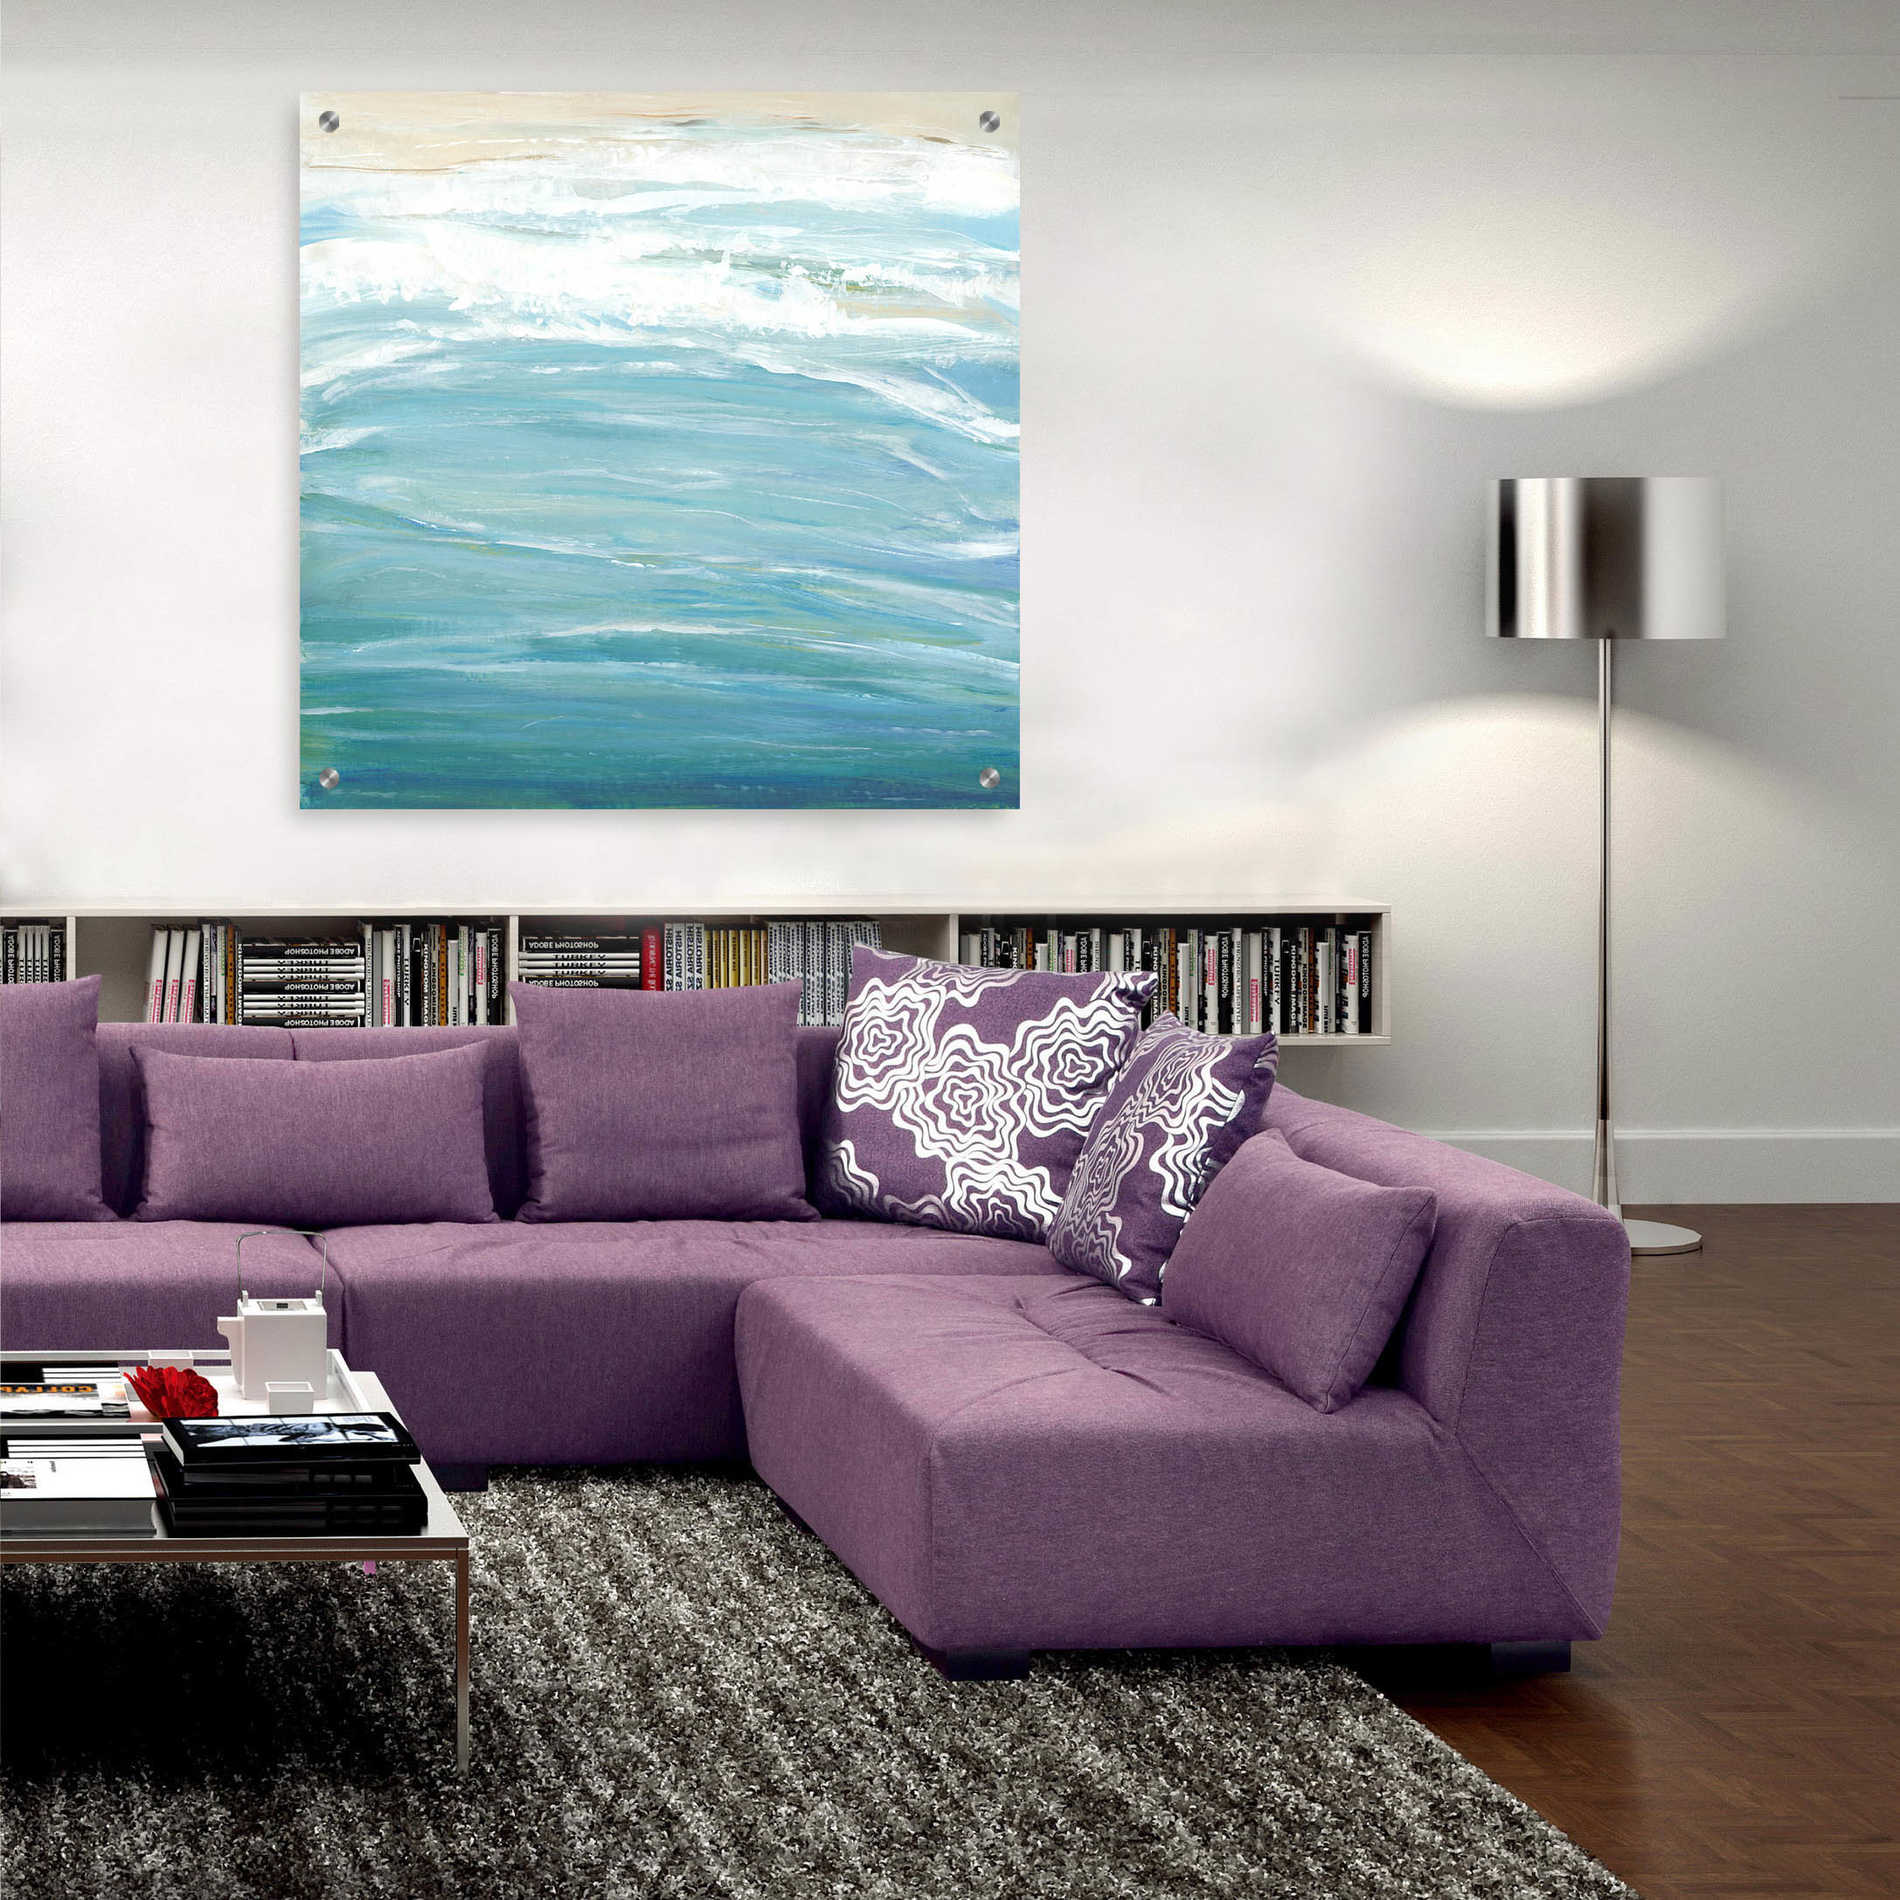 Epic Art 'Sea Breeze Coast II' by Tim O'Toole, Acrylic Glass Wall Art,36x36